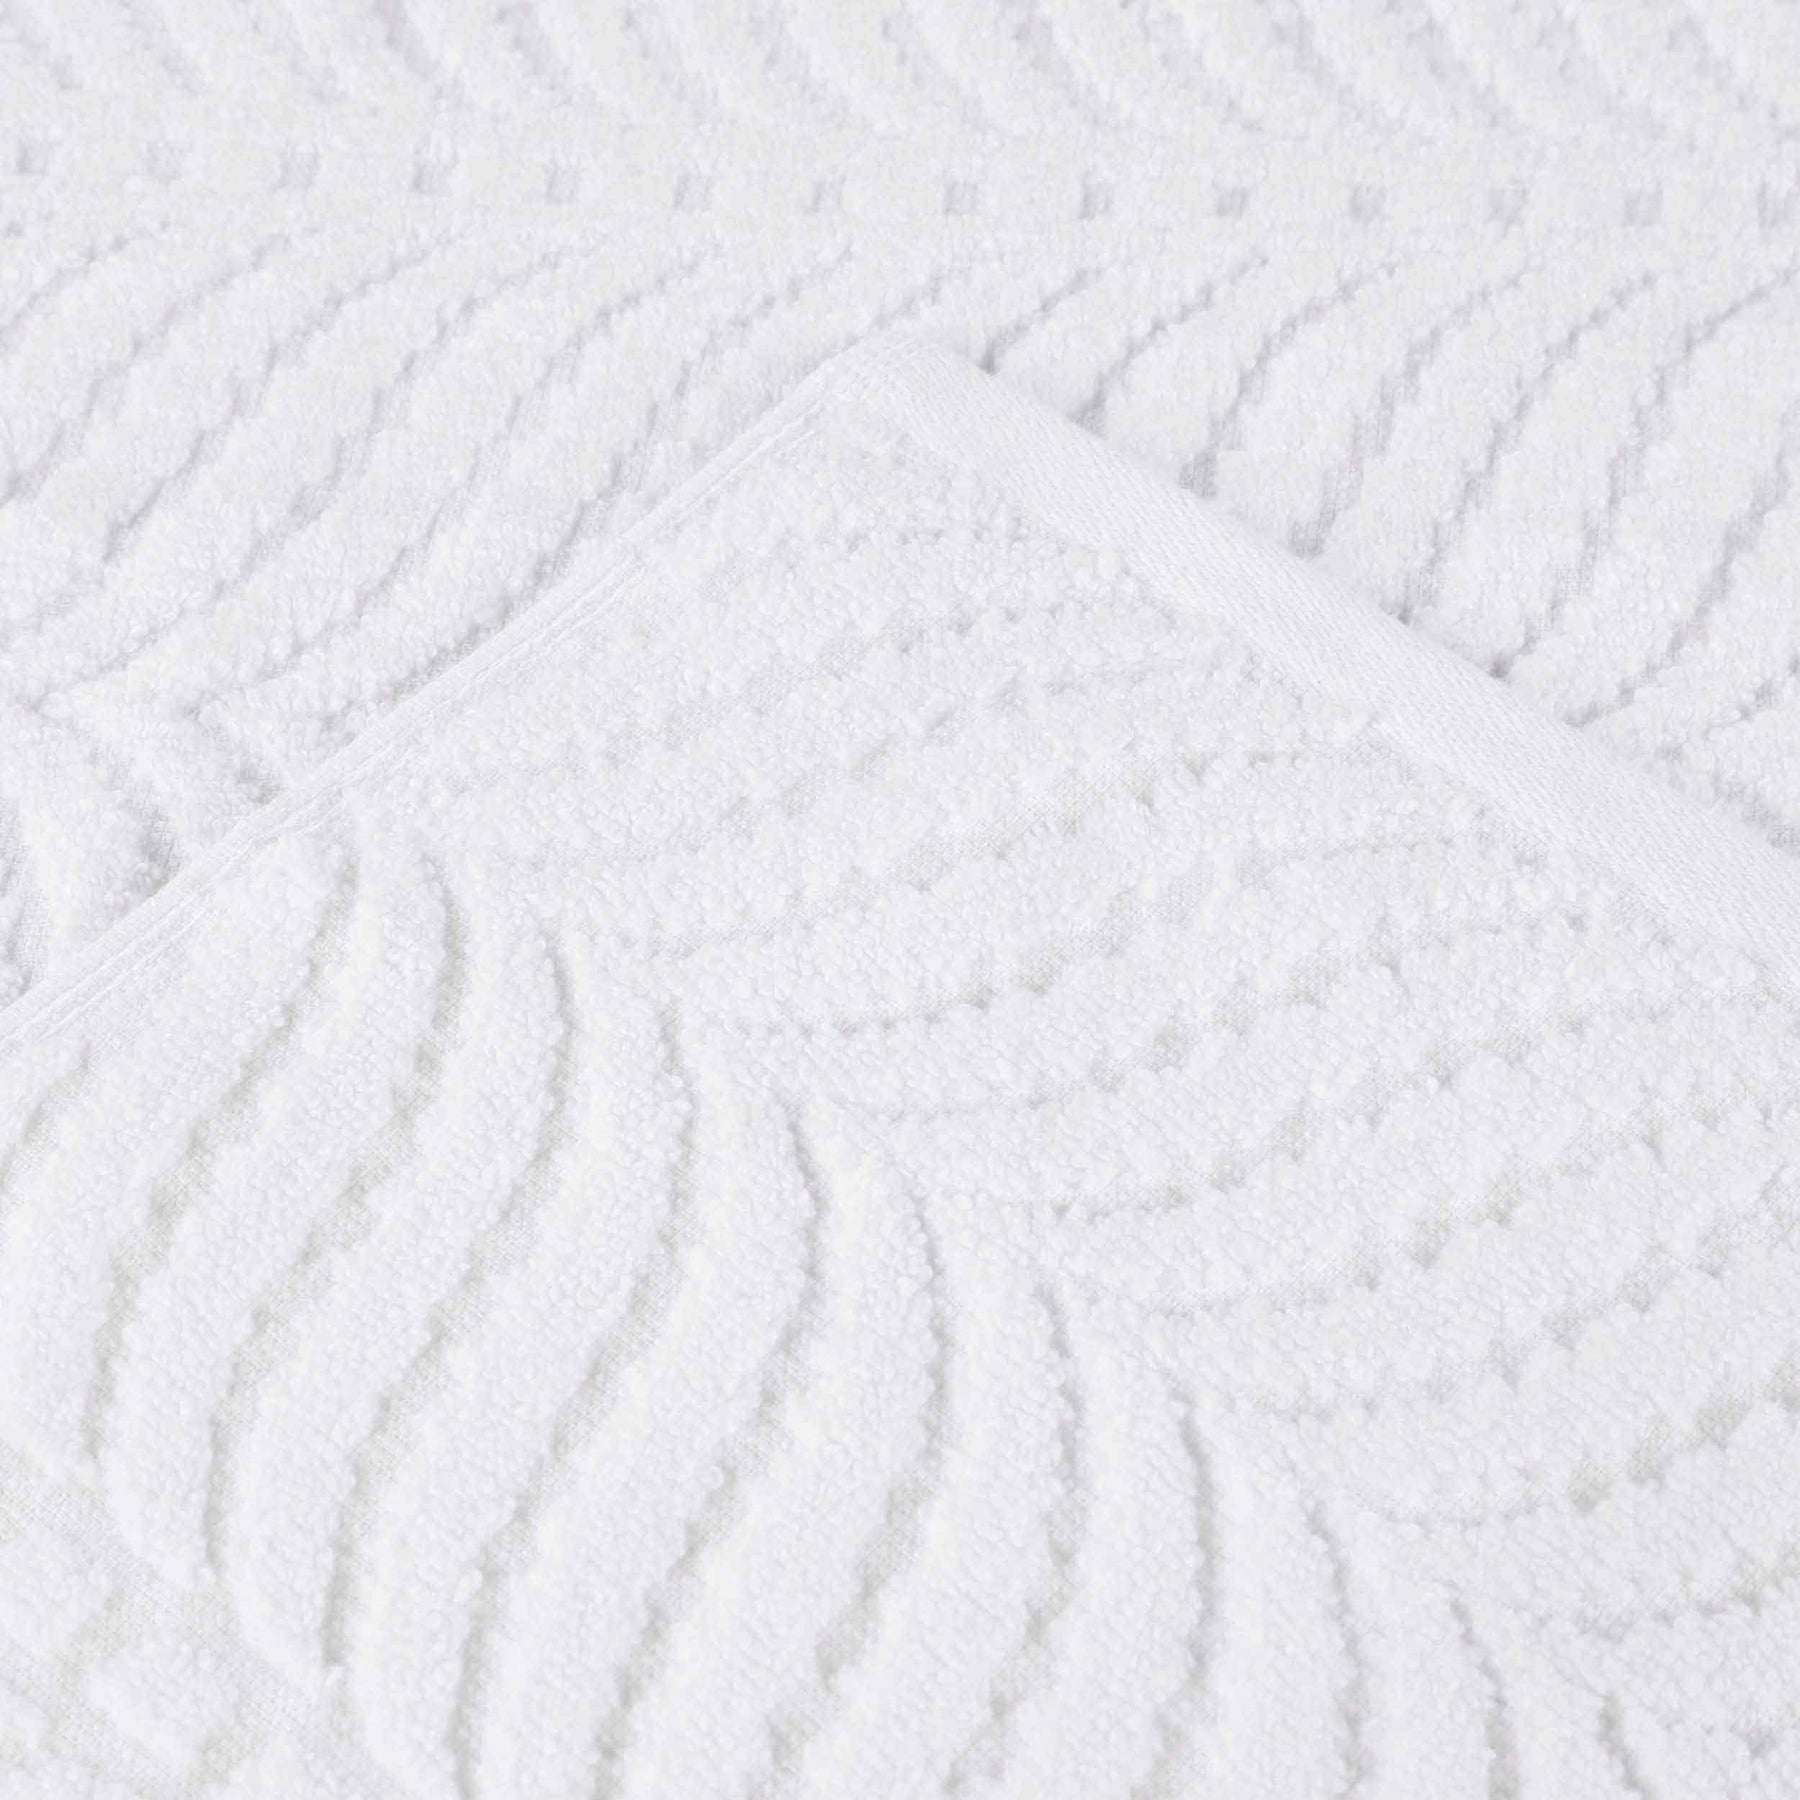 Chevron Zero Twist Cotton 3 Piece Jacquard Towel Set - White